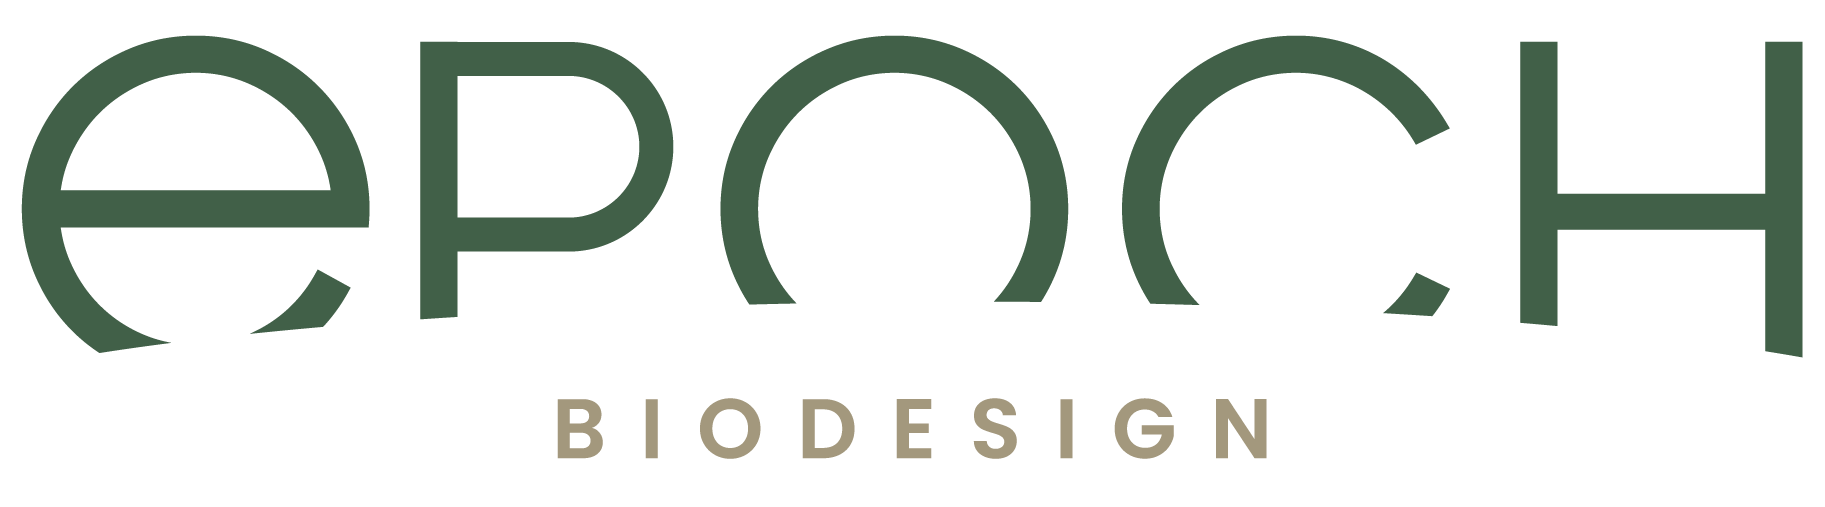 epoch biodesign-logo.png